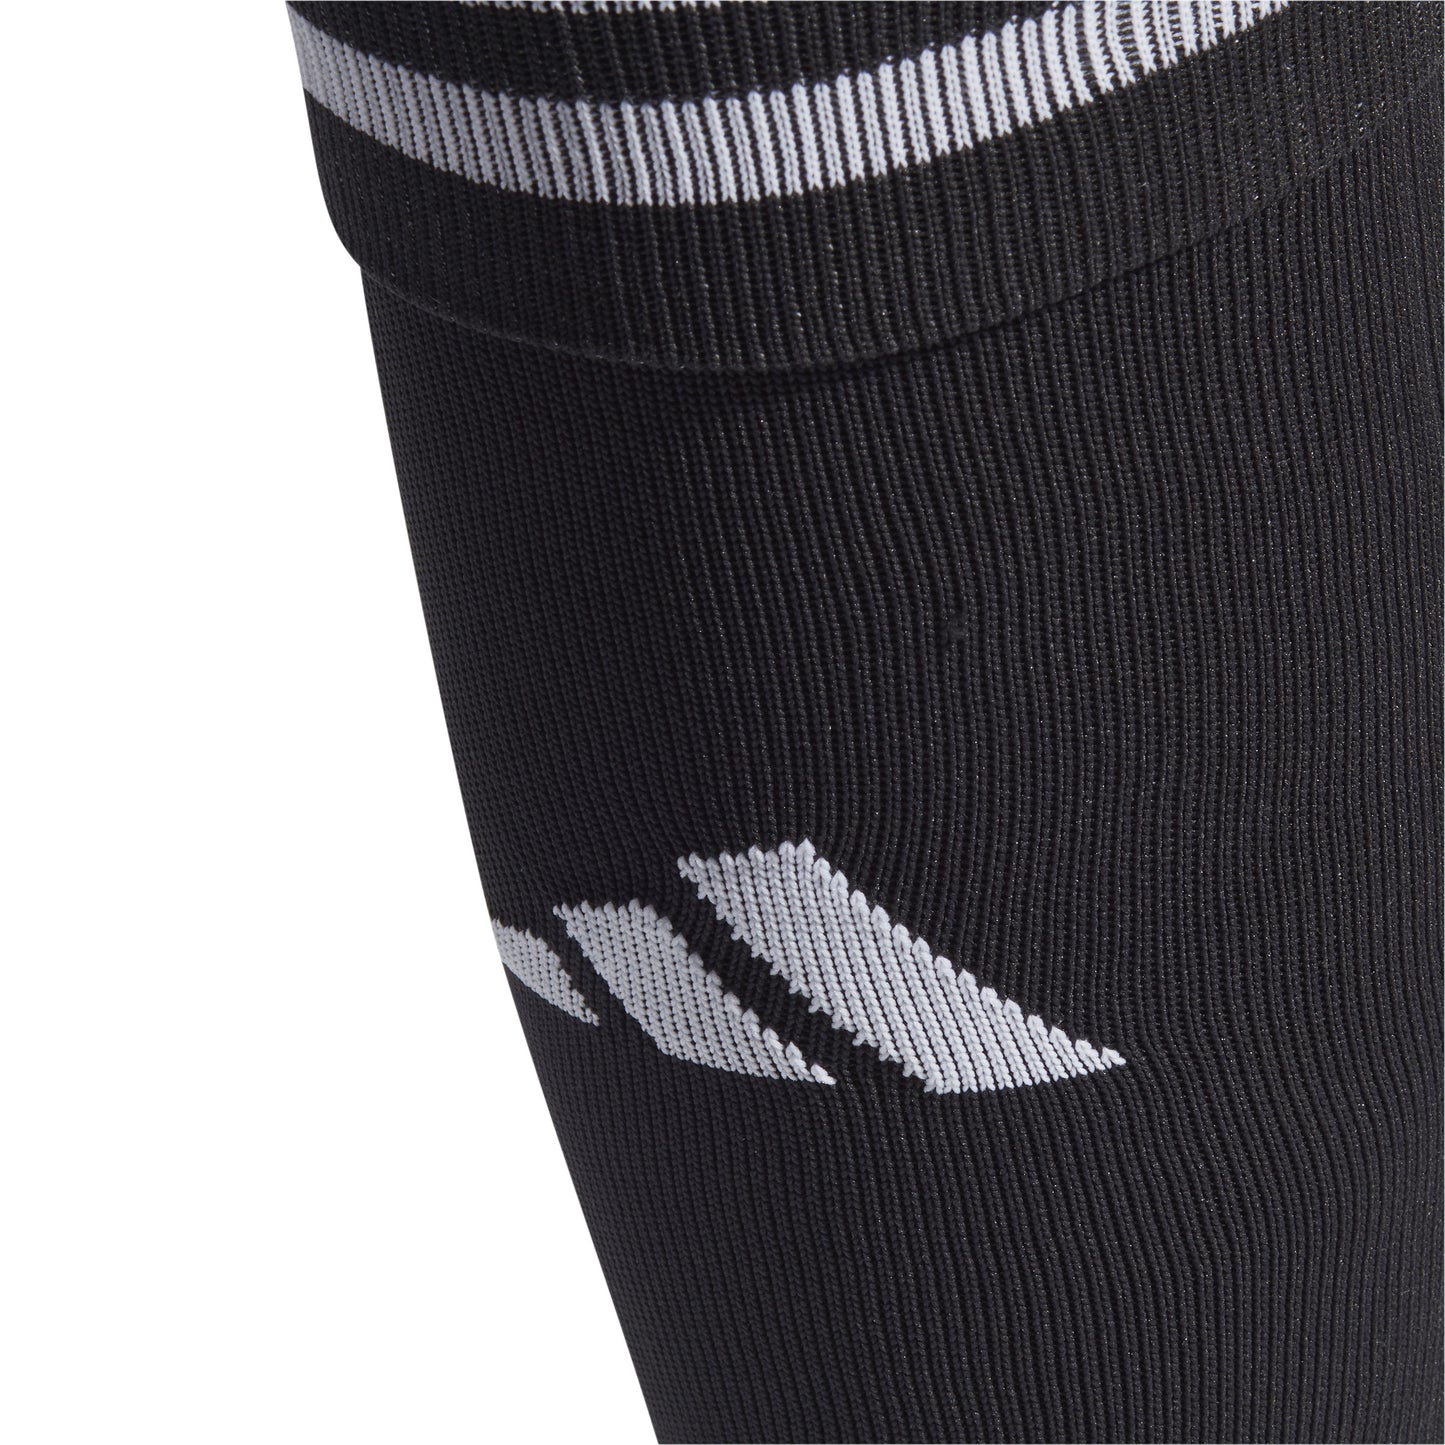 Adidas Team Sleeve 23 Socks